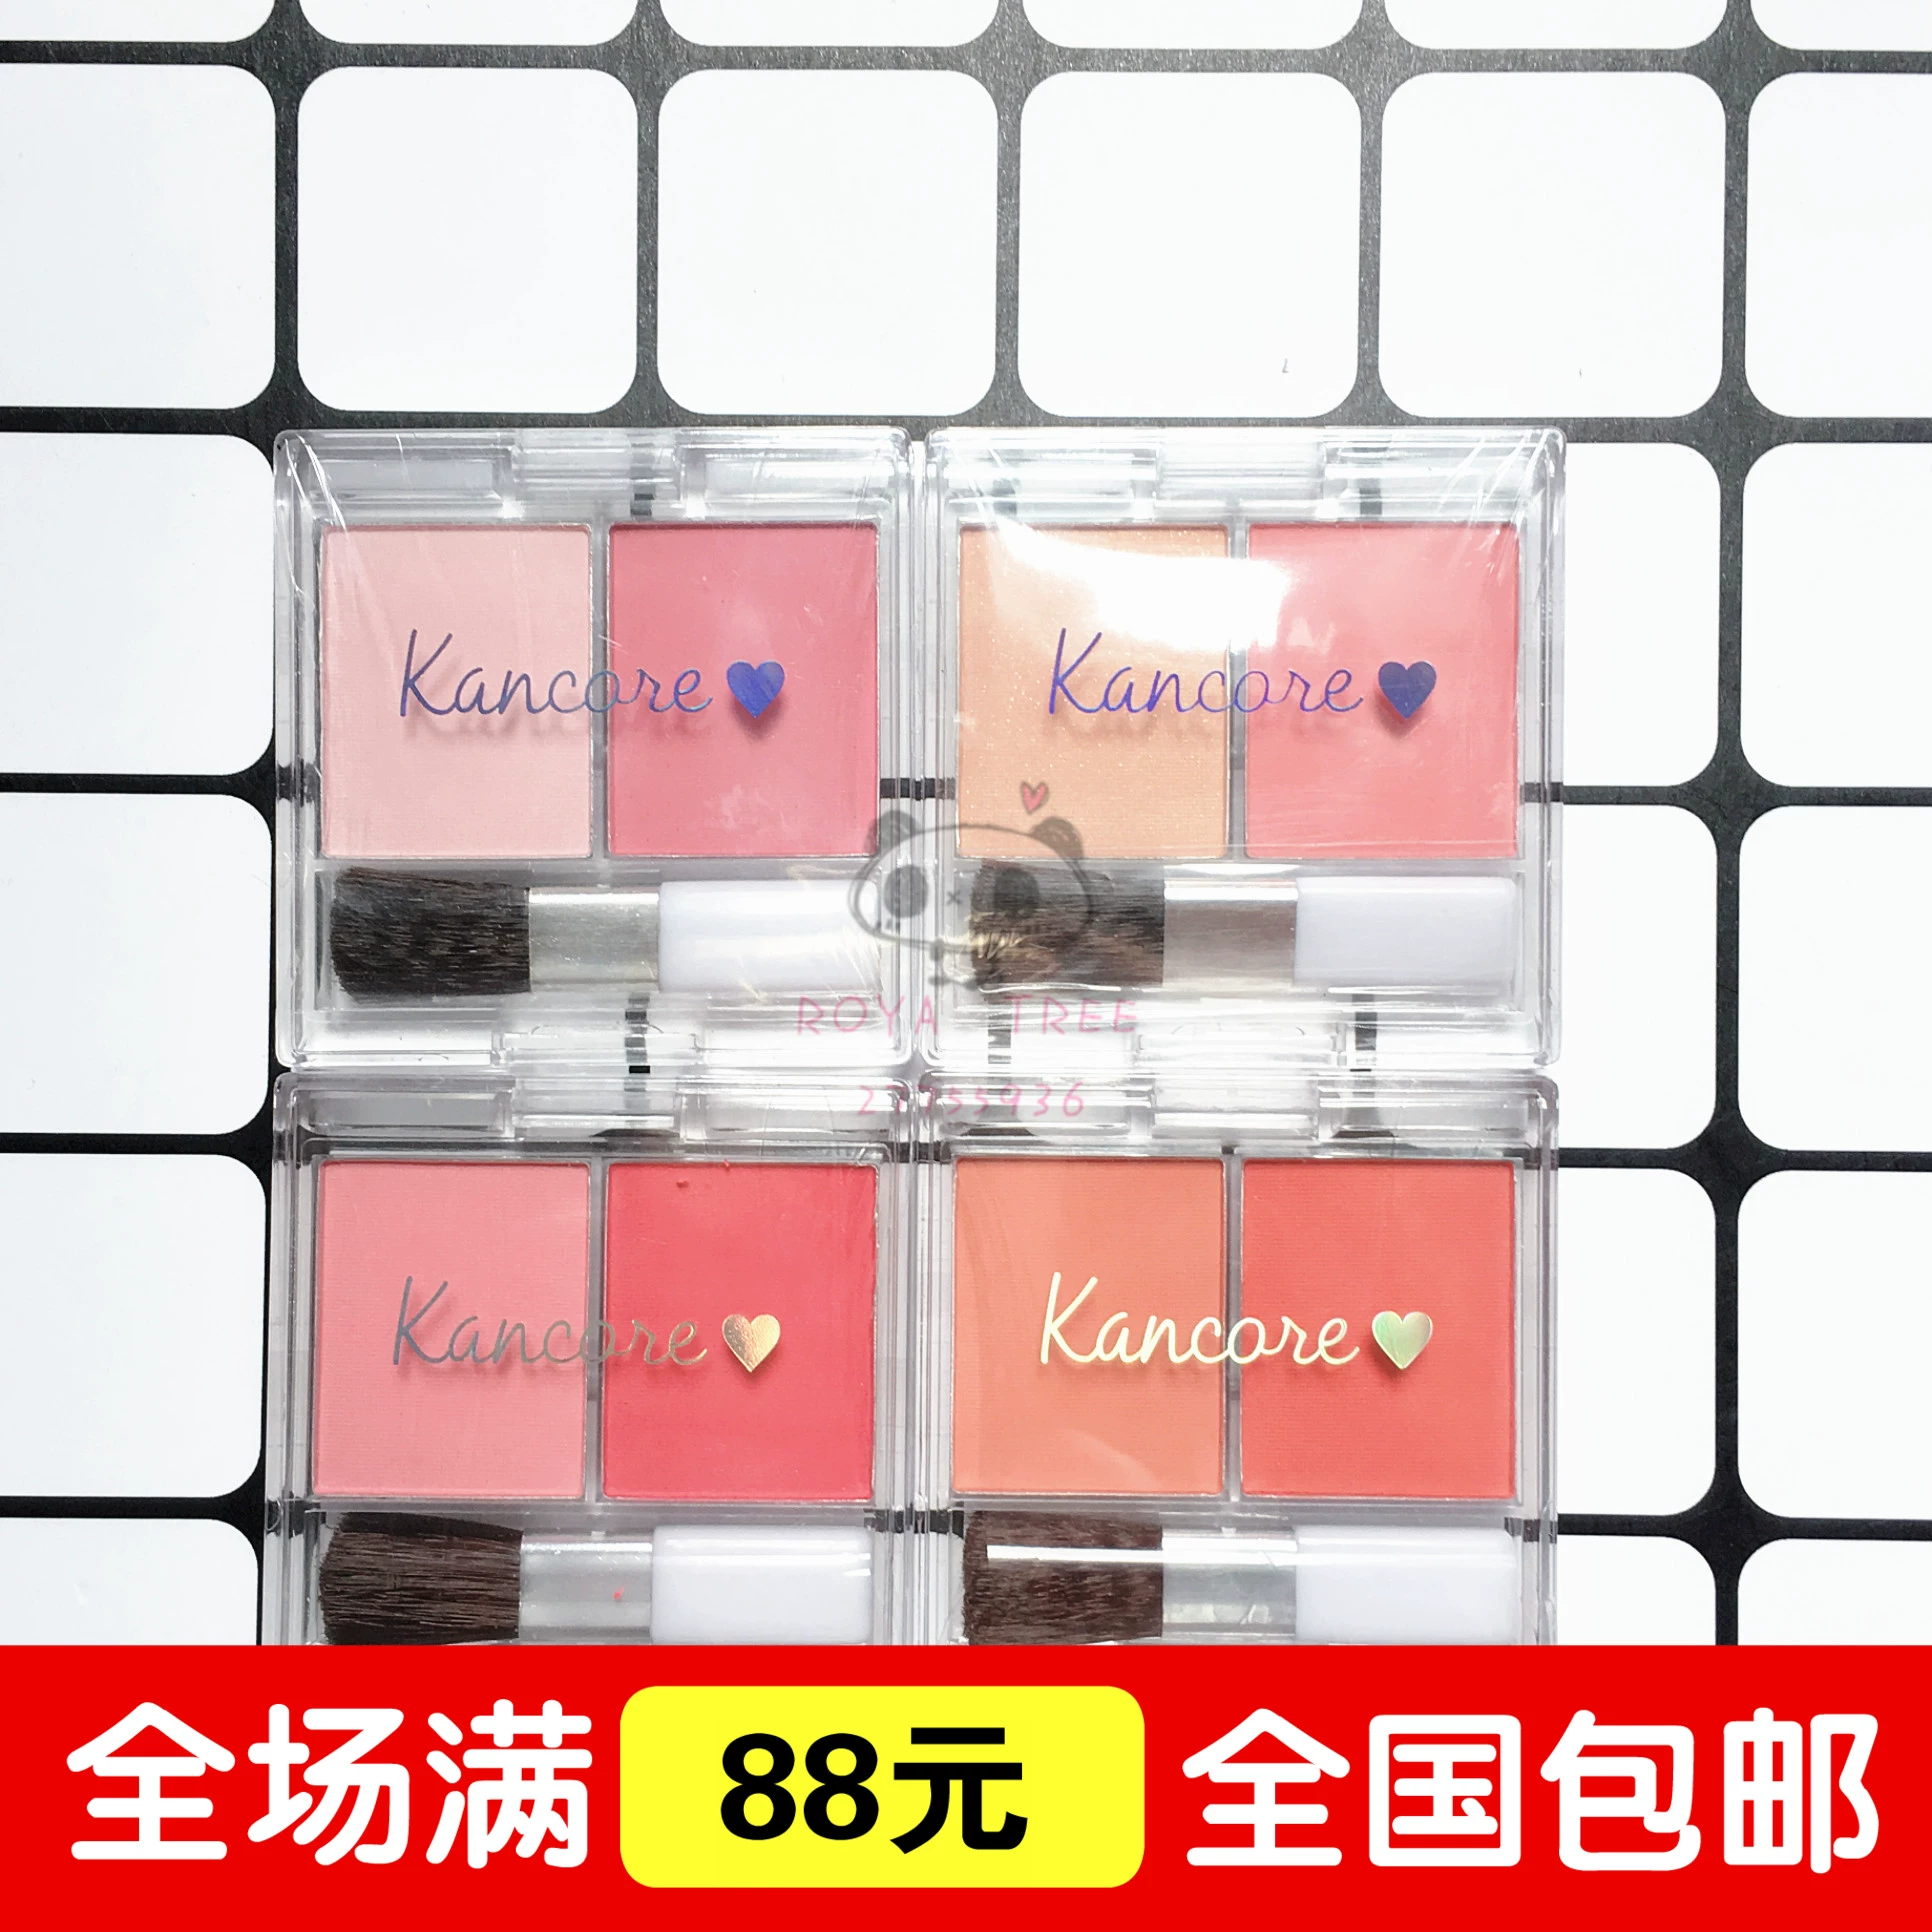 Phấn má hồng hai tông, phấn nude, trang điểm nude, loạt cam ấm với bốn chương trình khuyến mãi kancore chung DAISO Nhật Bản - Blush / Cochineal